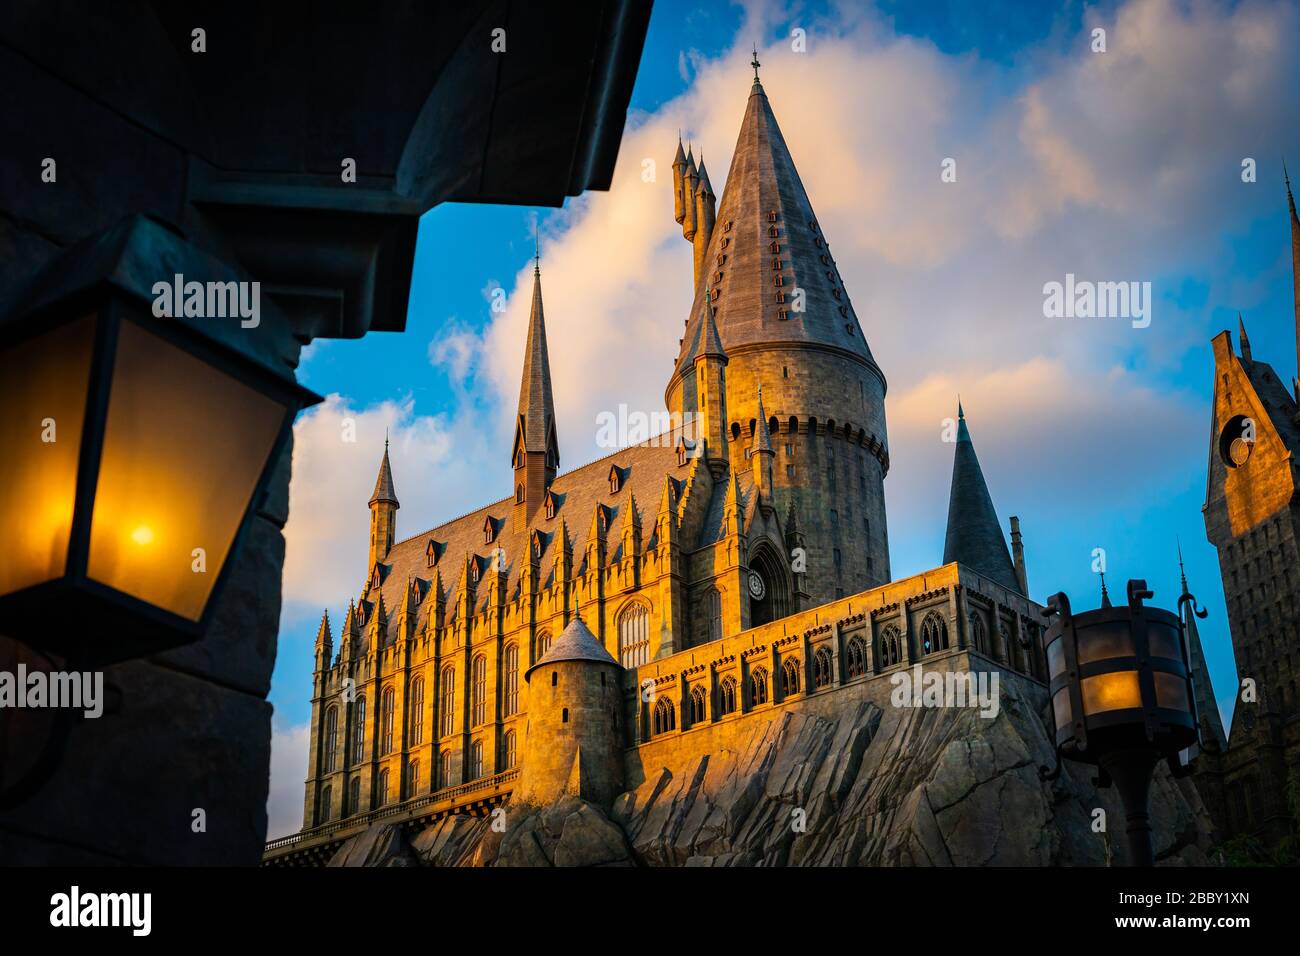 Escuela Del Castillo Hogwarts En La Pel Cula Tem Tica De Harry Potter En Universal Studios En